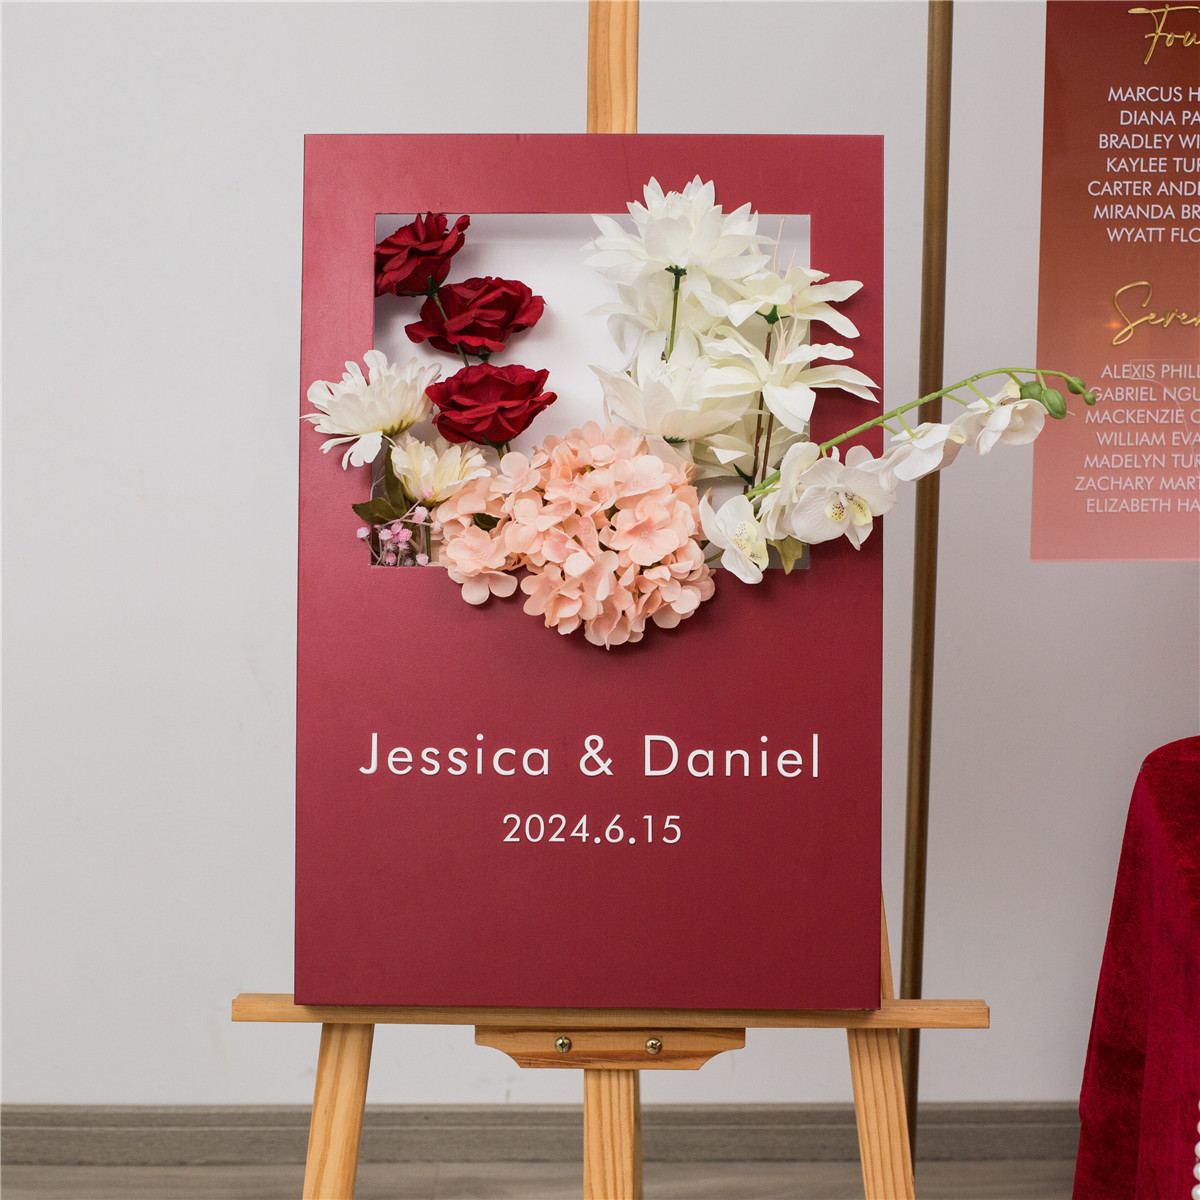 3mm Cartelli Plexiglass tableau di mariage con fiori YK072 - Clicca l'immagine per chiudere